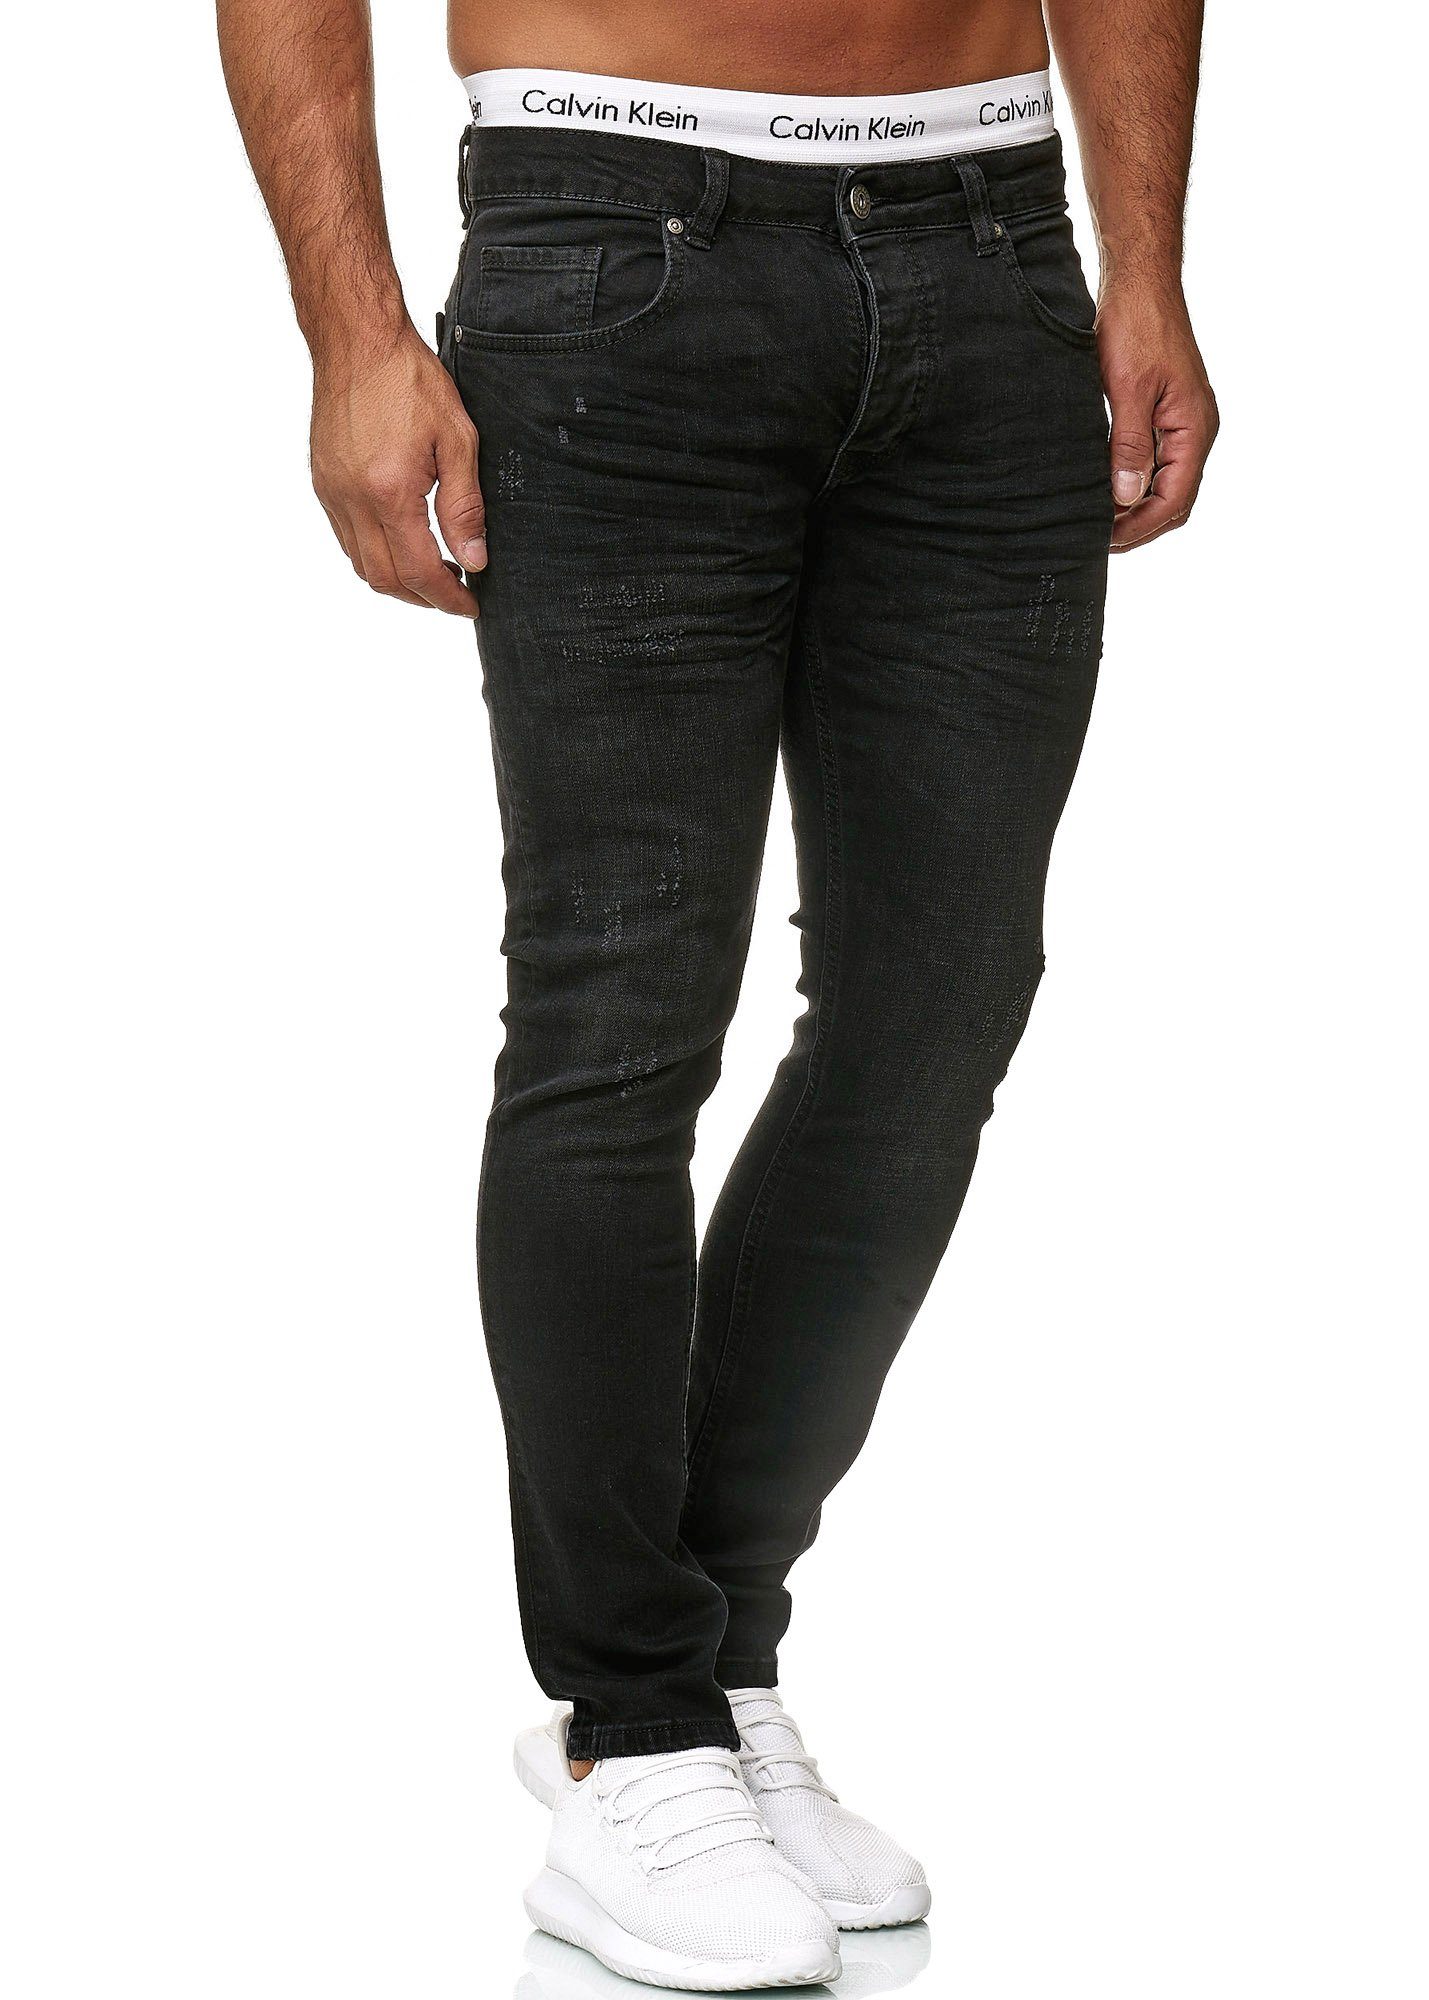 Code47 Skinny-fit-Jeans Code47 Designer Herren Jeans Hose Regular Skinny Fit Jeanshose Basic 603 Midnight Black Used